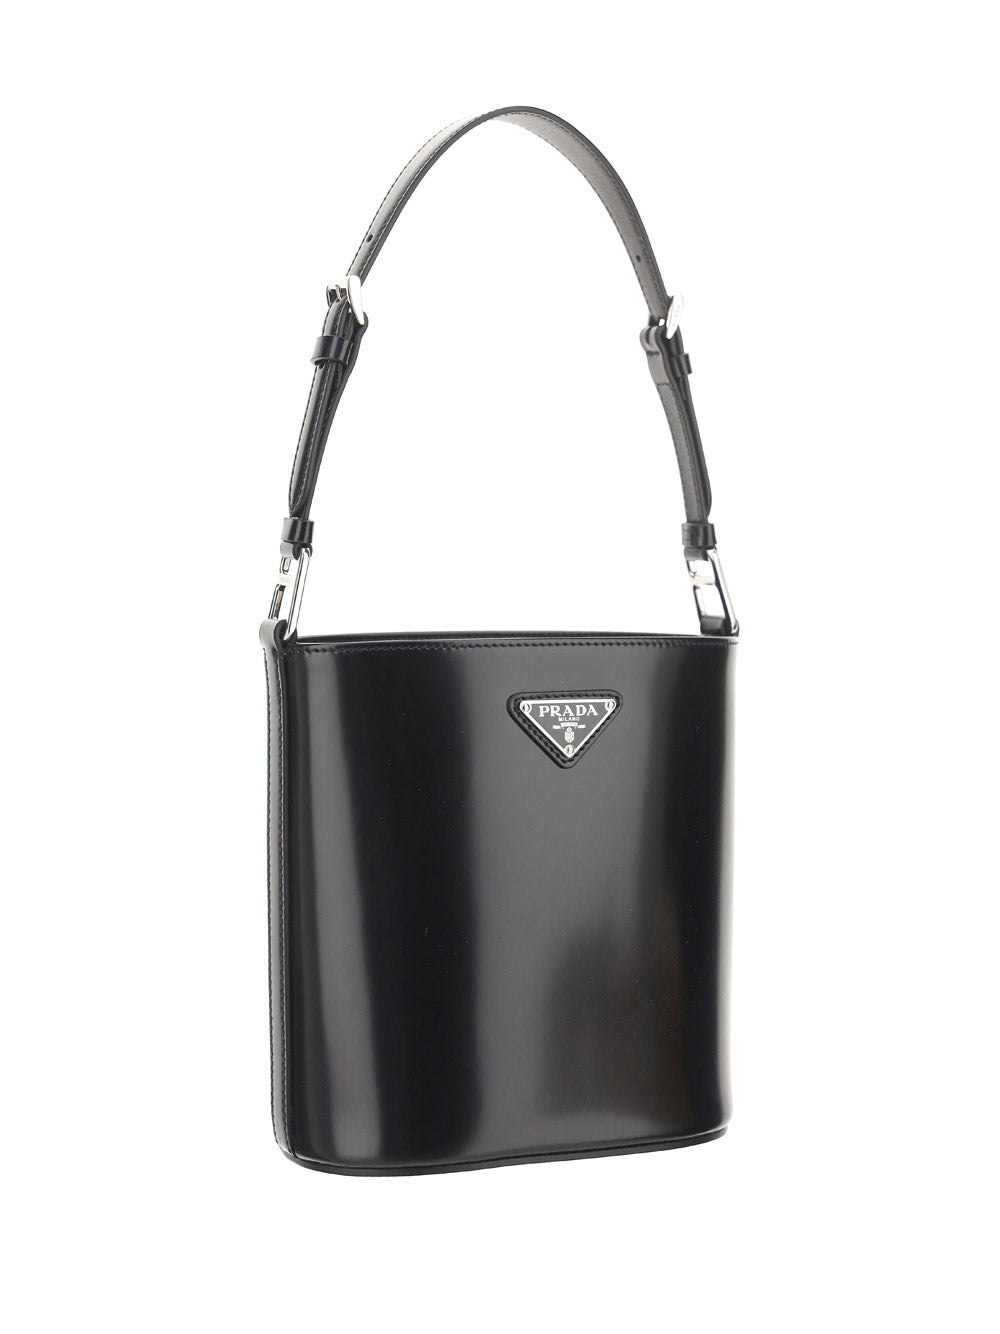 Brushed Leather Bucket Shoulder & Crossbody Bag - Black.